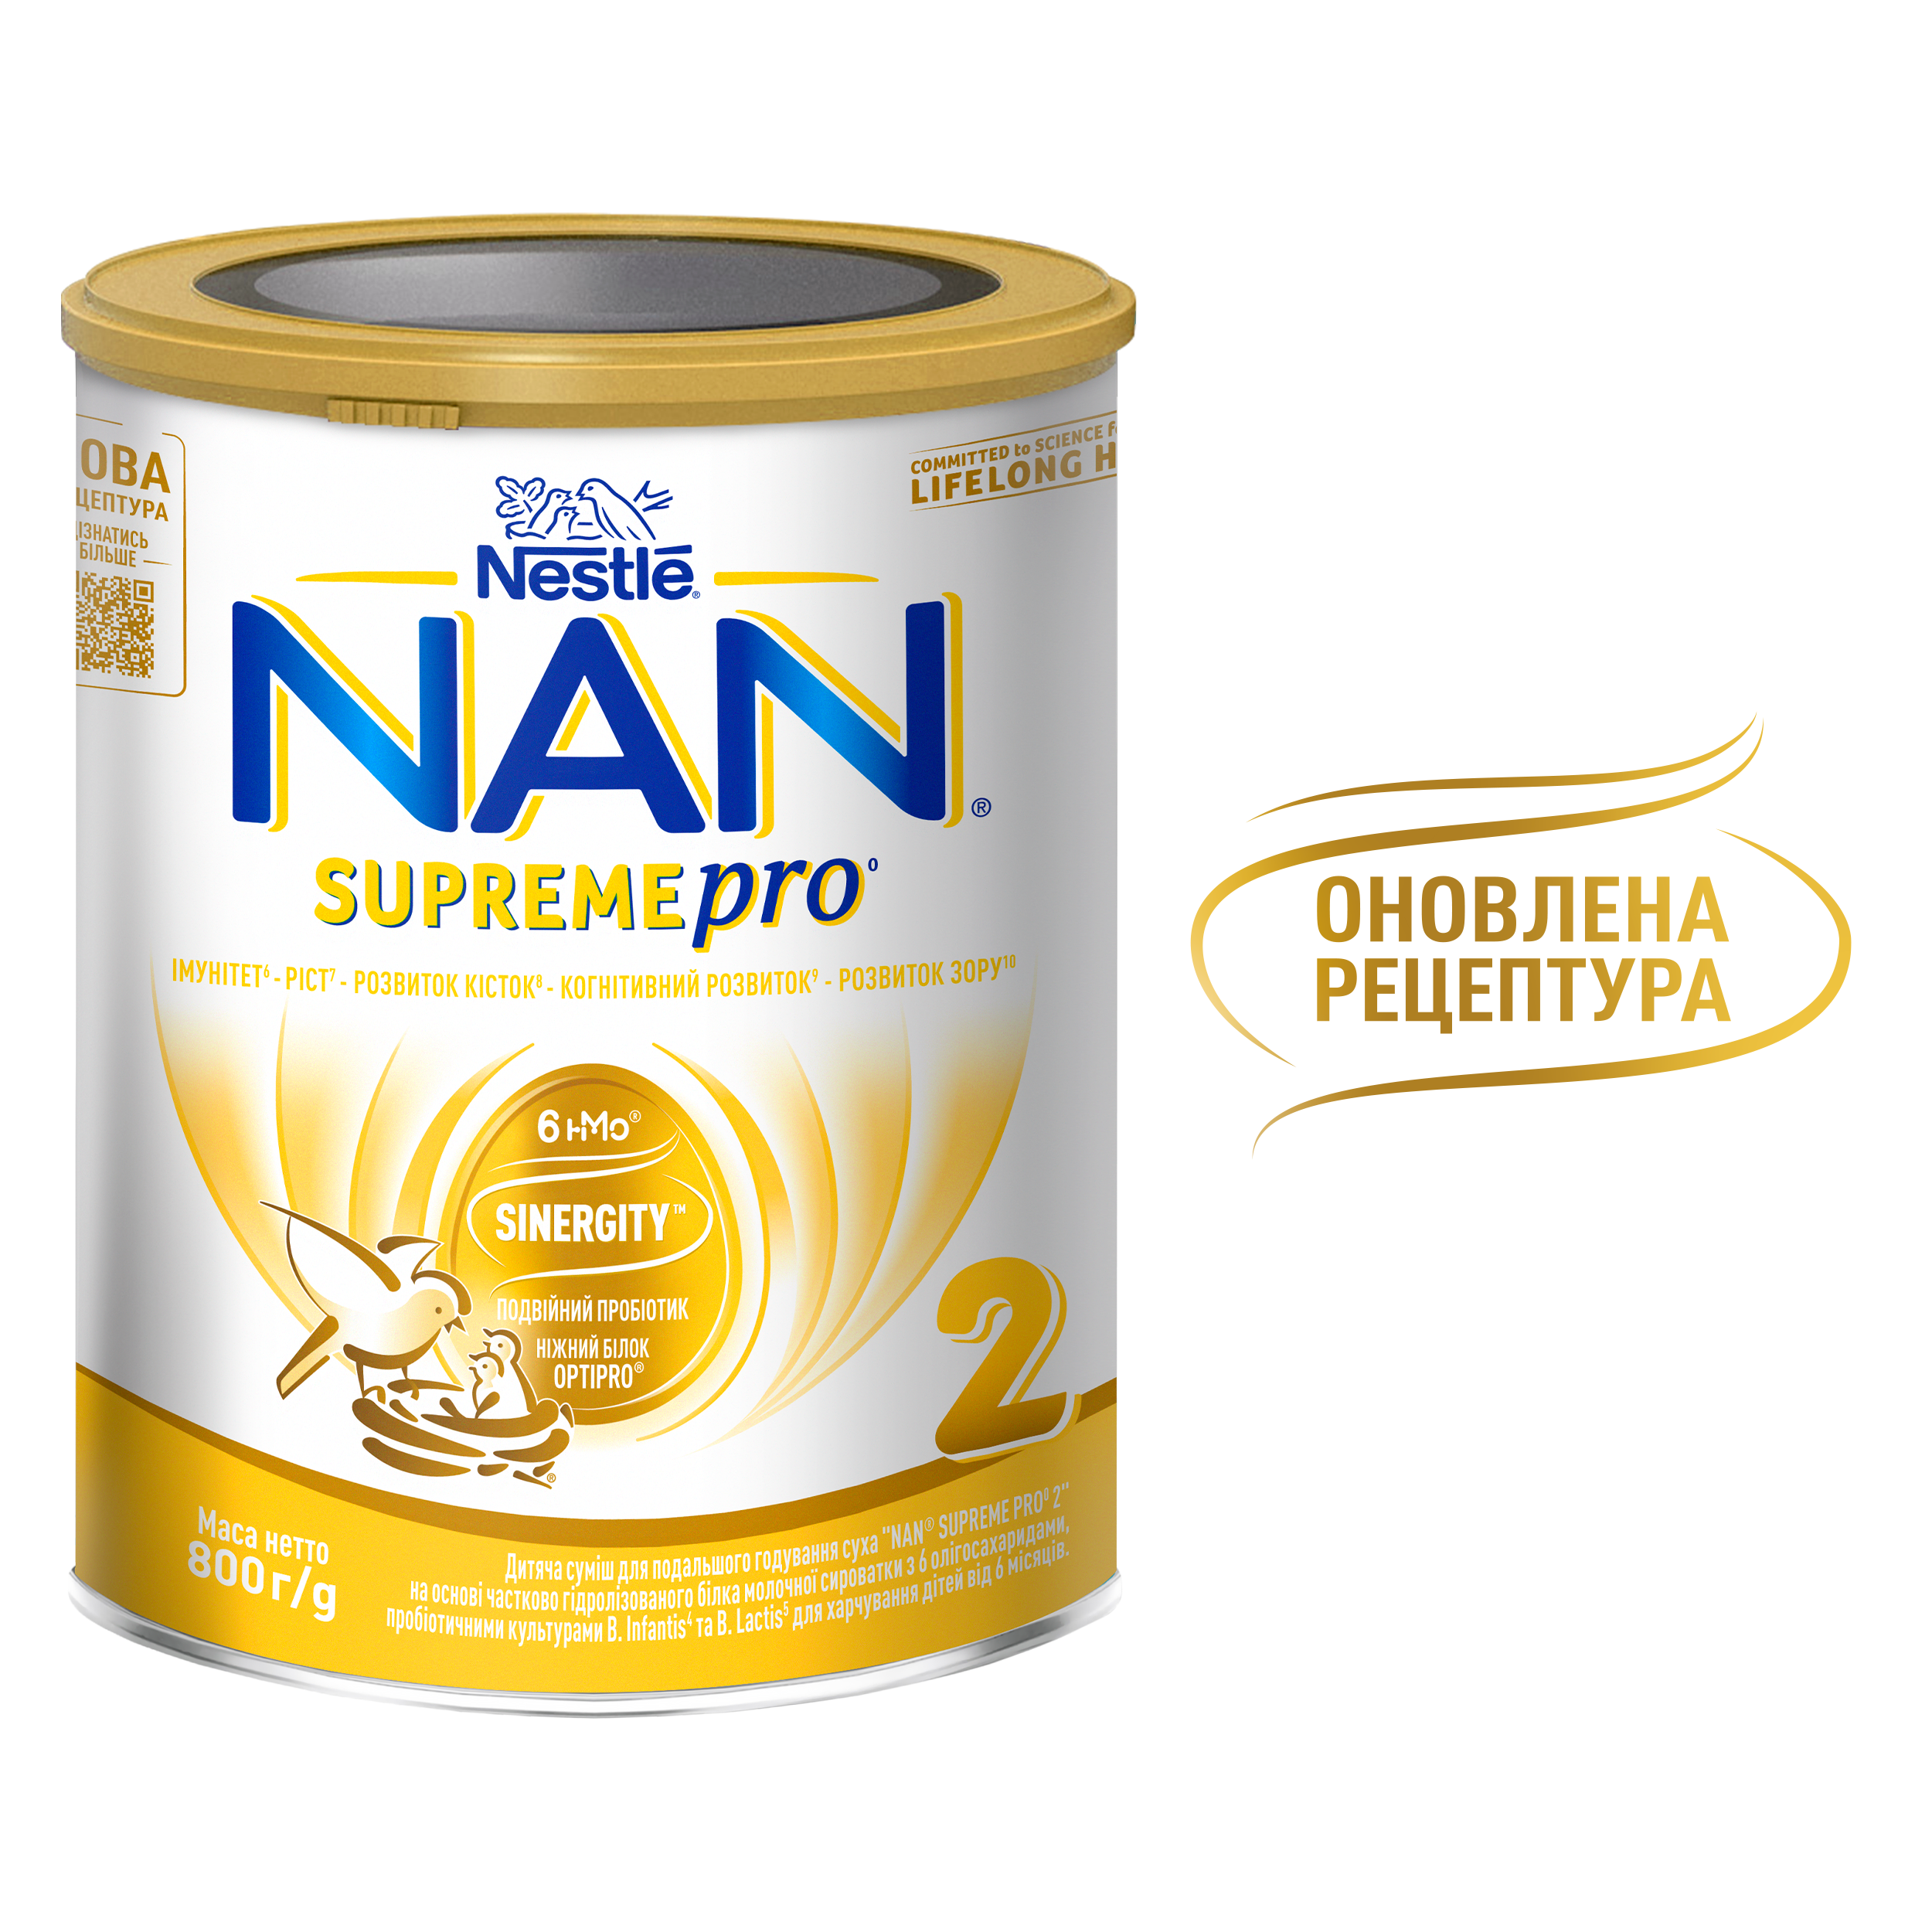 Сухая молочная смесь NAN Supreme Pro 2, с олигосахаридами, 800 г - фото 7